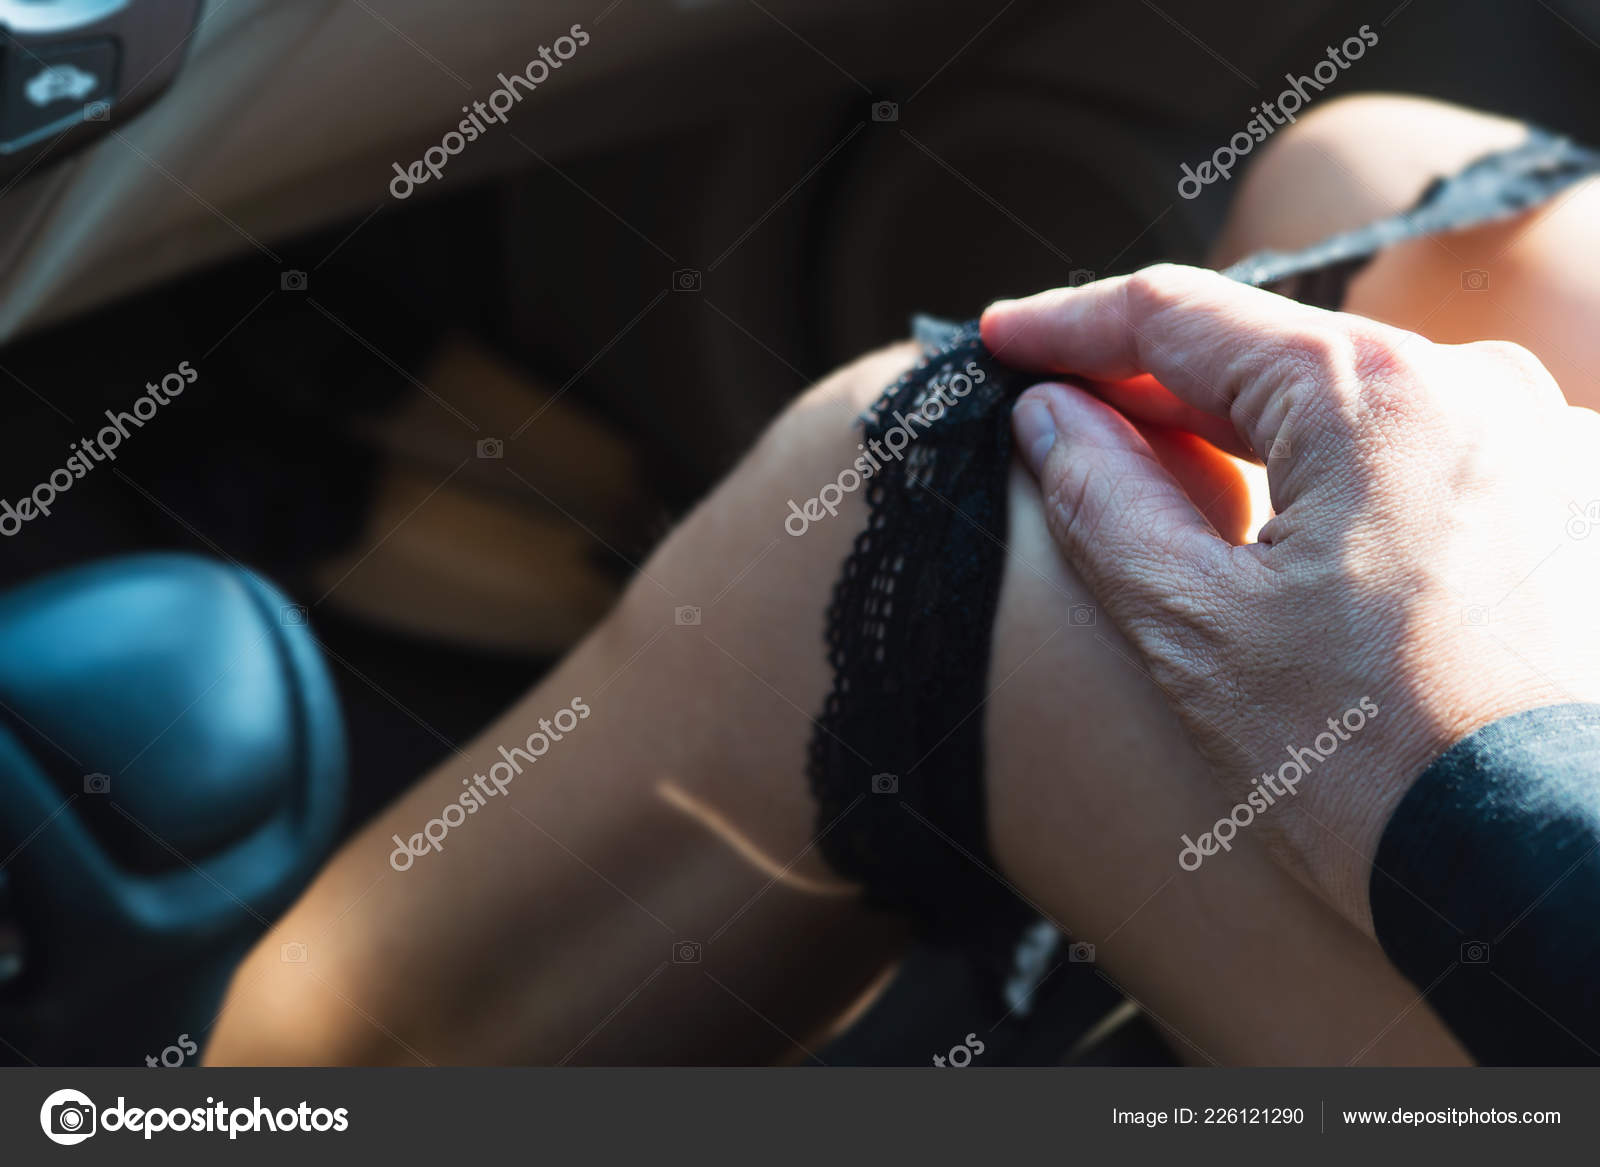 Uomo tirando fodera panty della donna durante la guida o seduto in auto ses...